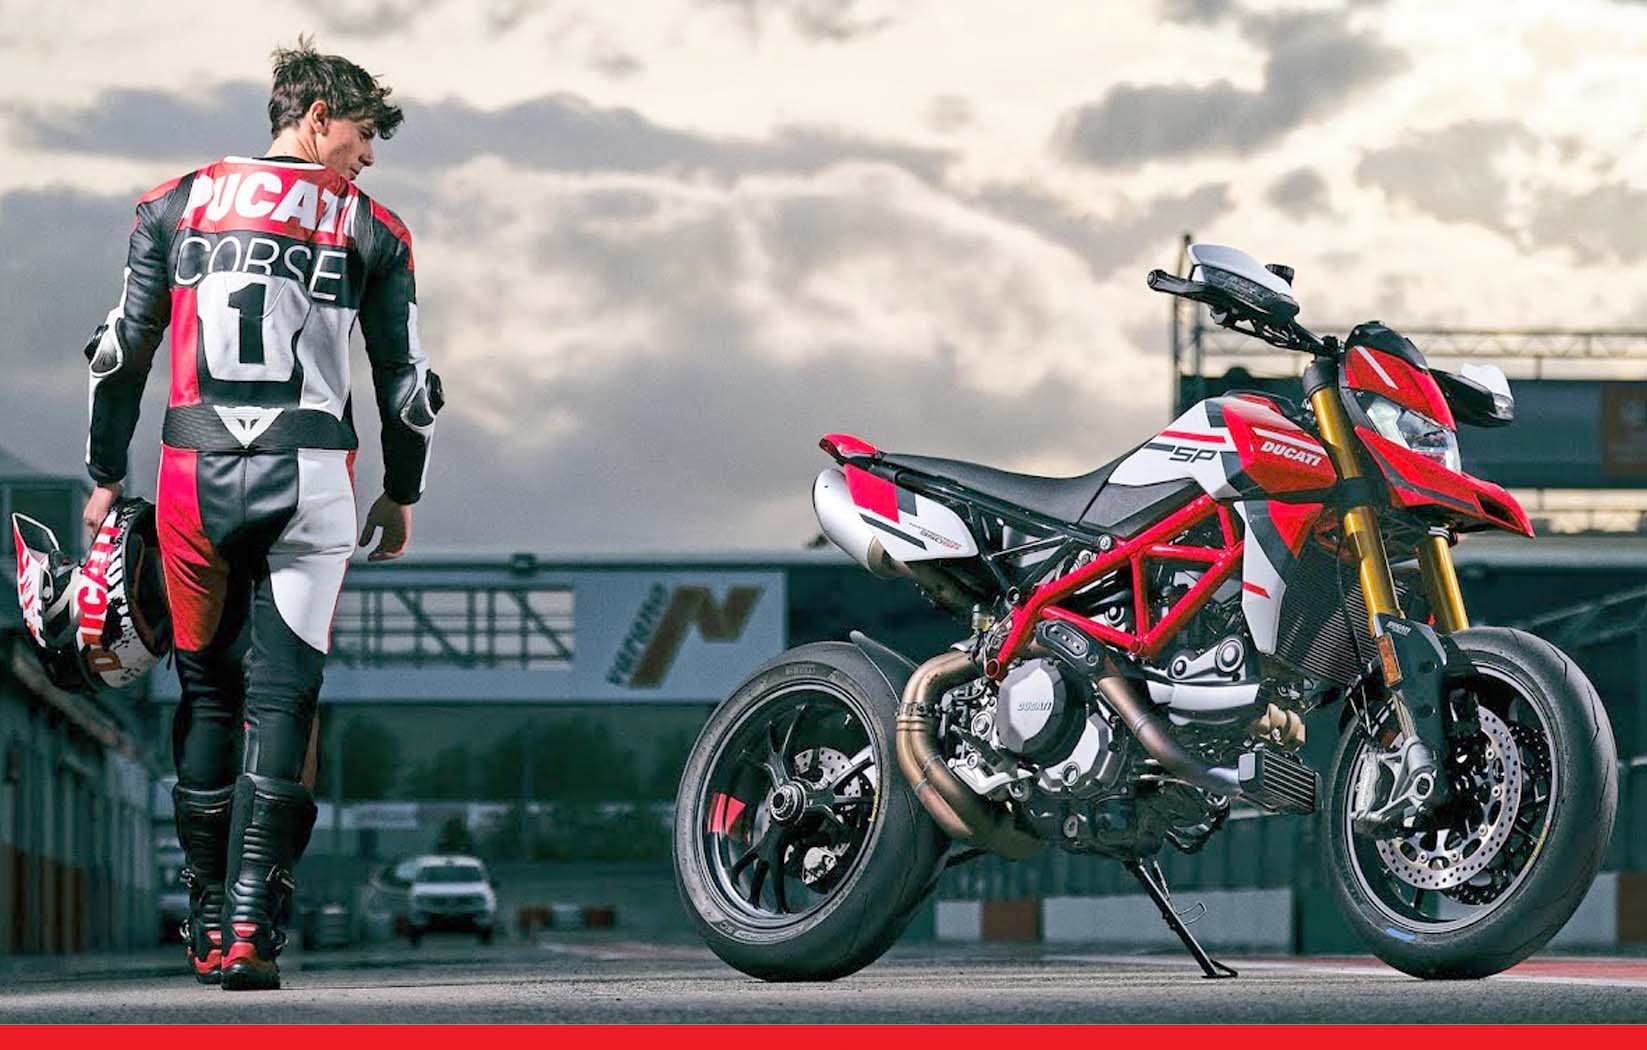 Ducati ने लॉन्च की 13 लाख रुपये की सुपर बाइक Hypermotard 950